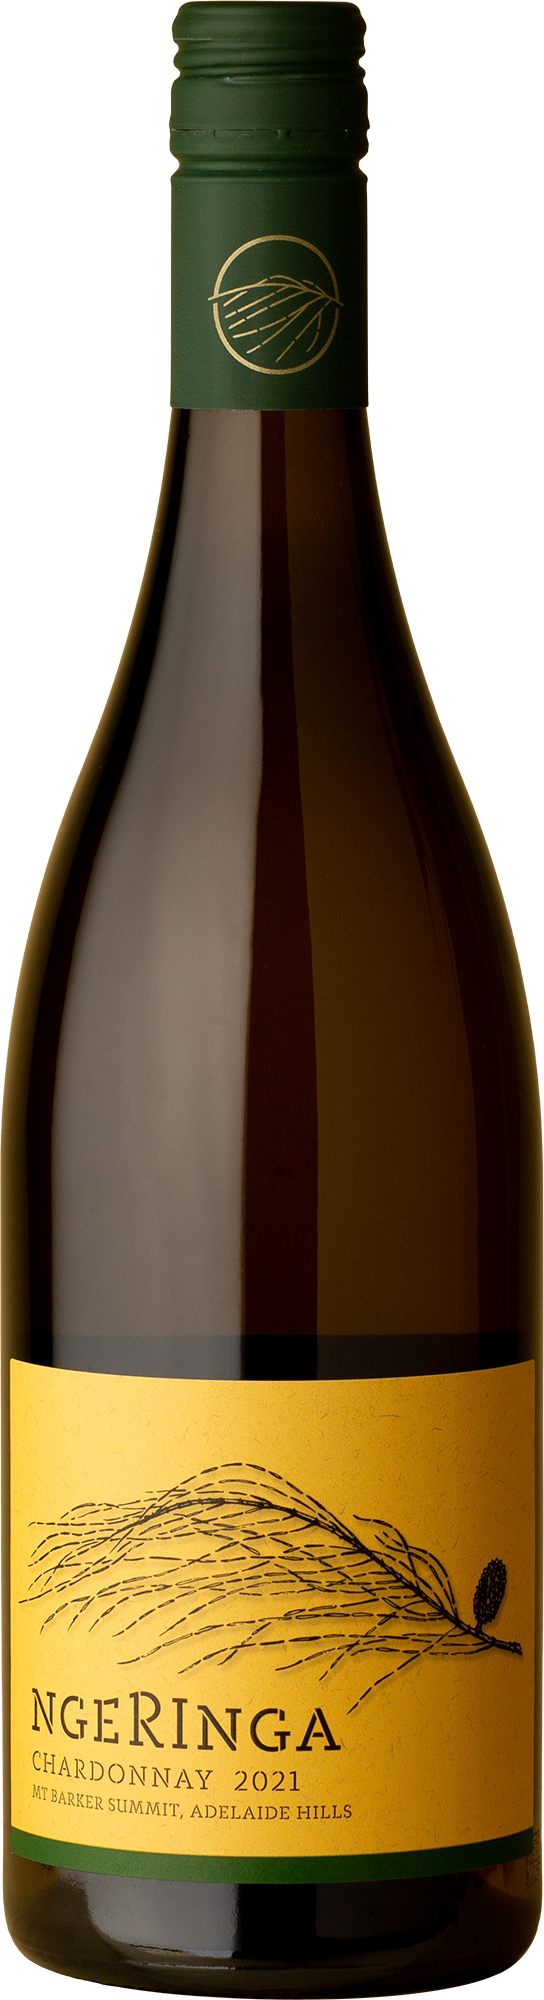 Ngeringa - Chardonnay 2021 White Wine